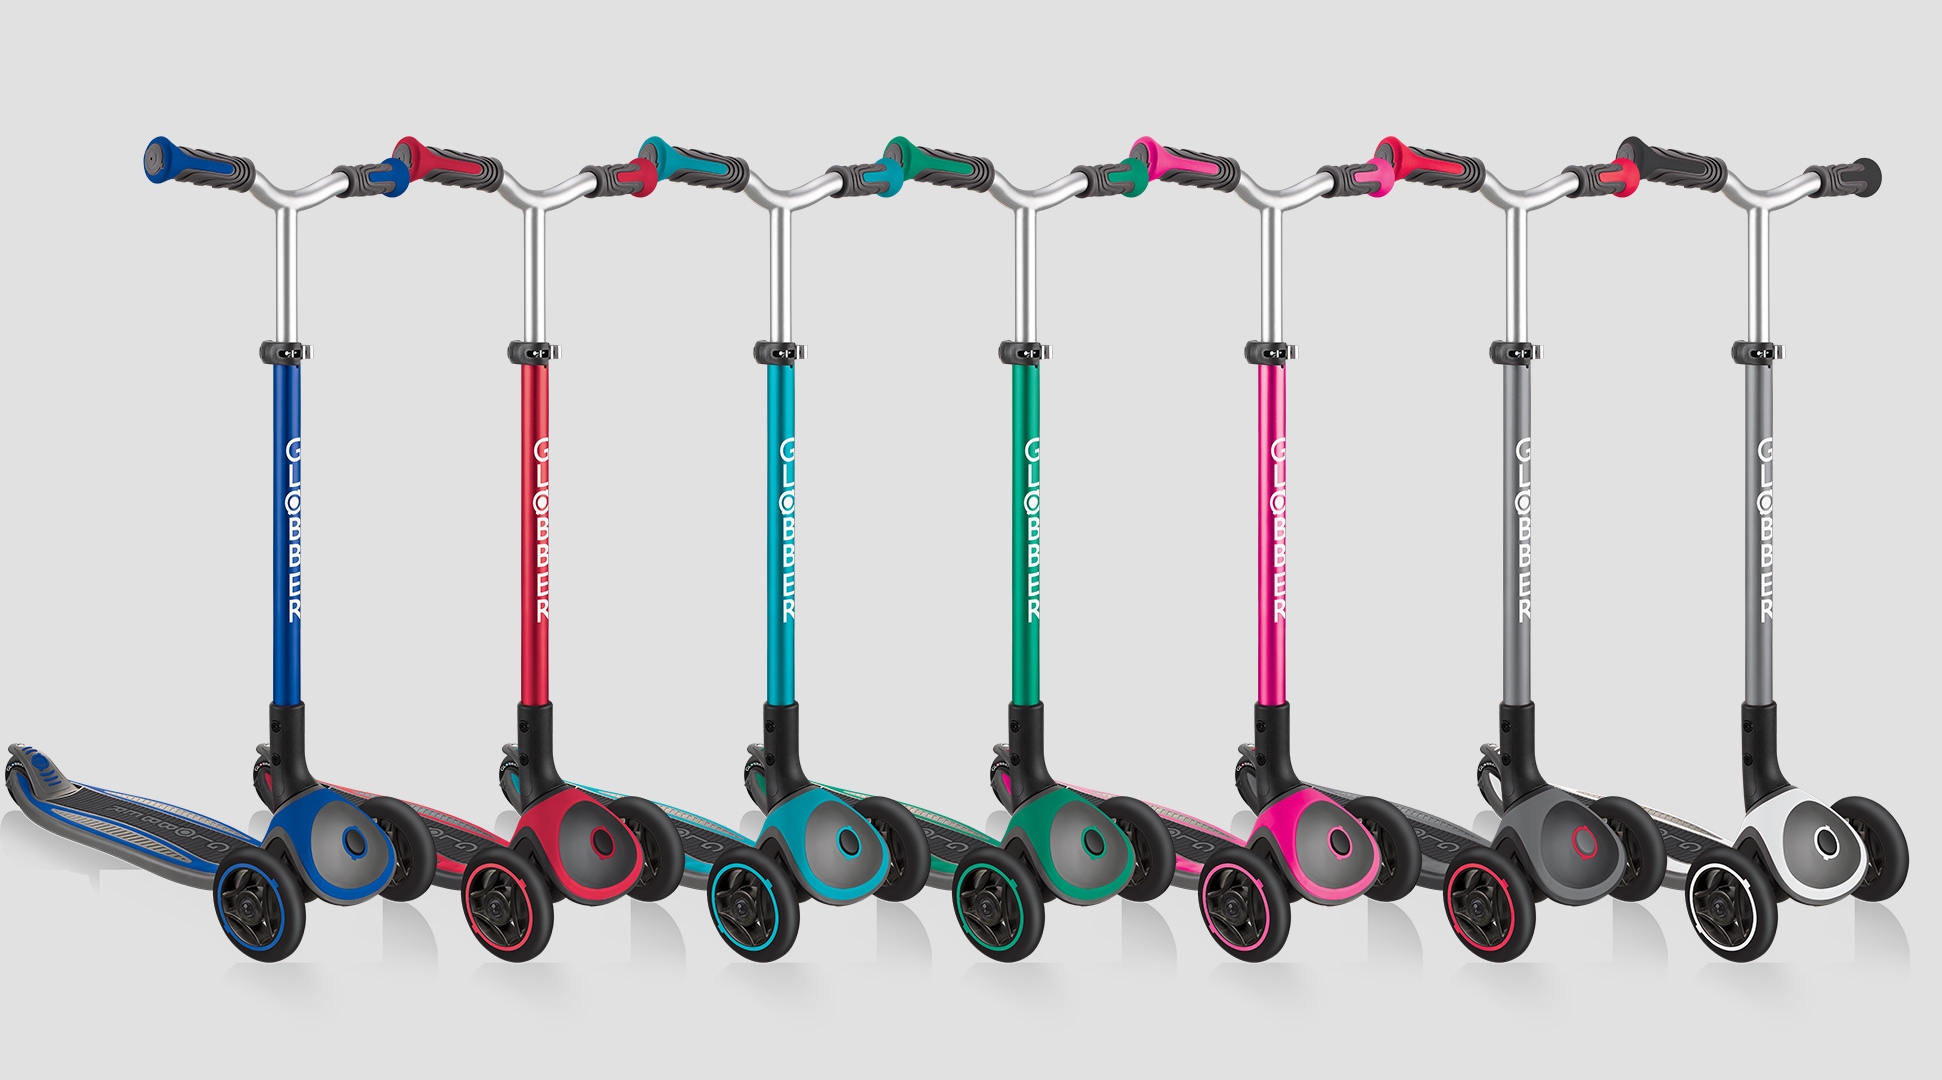 Un large choix de couleurs pour votre trottinette 3 roues pliable MASTER! Choississez votre préféré!